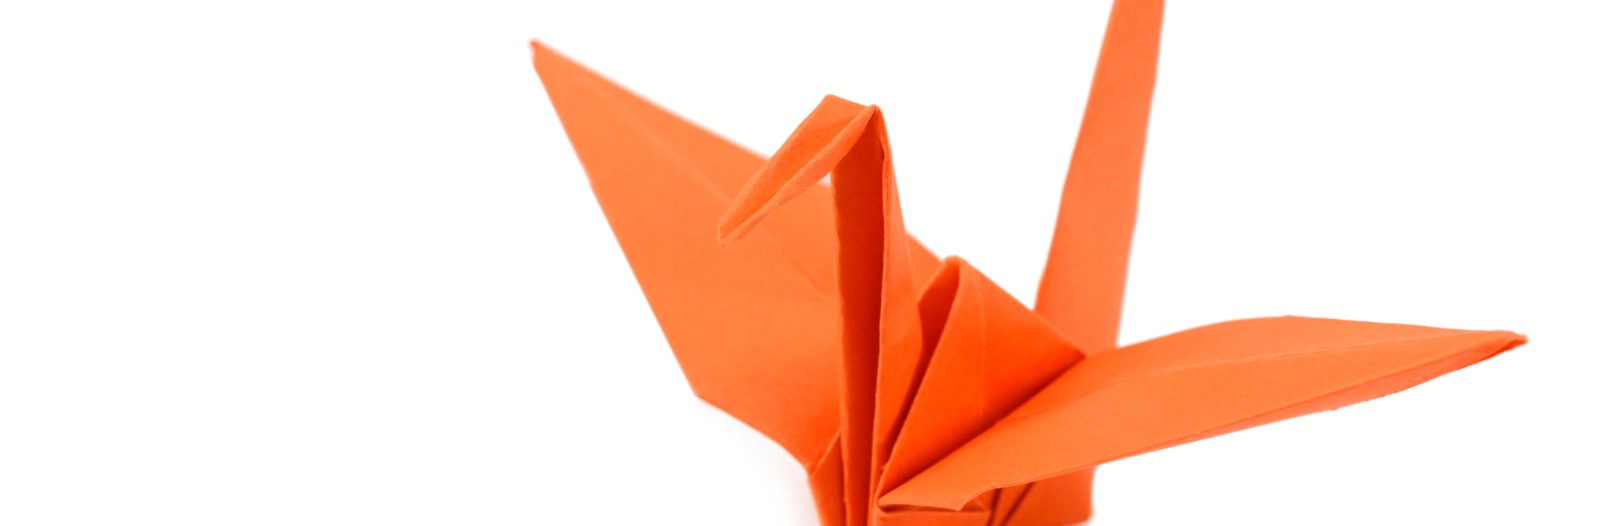 Orange origami crane